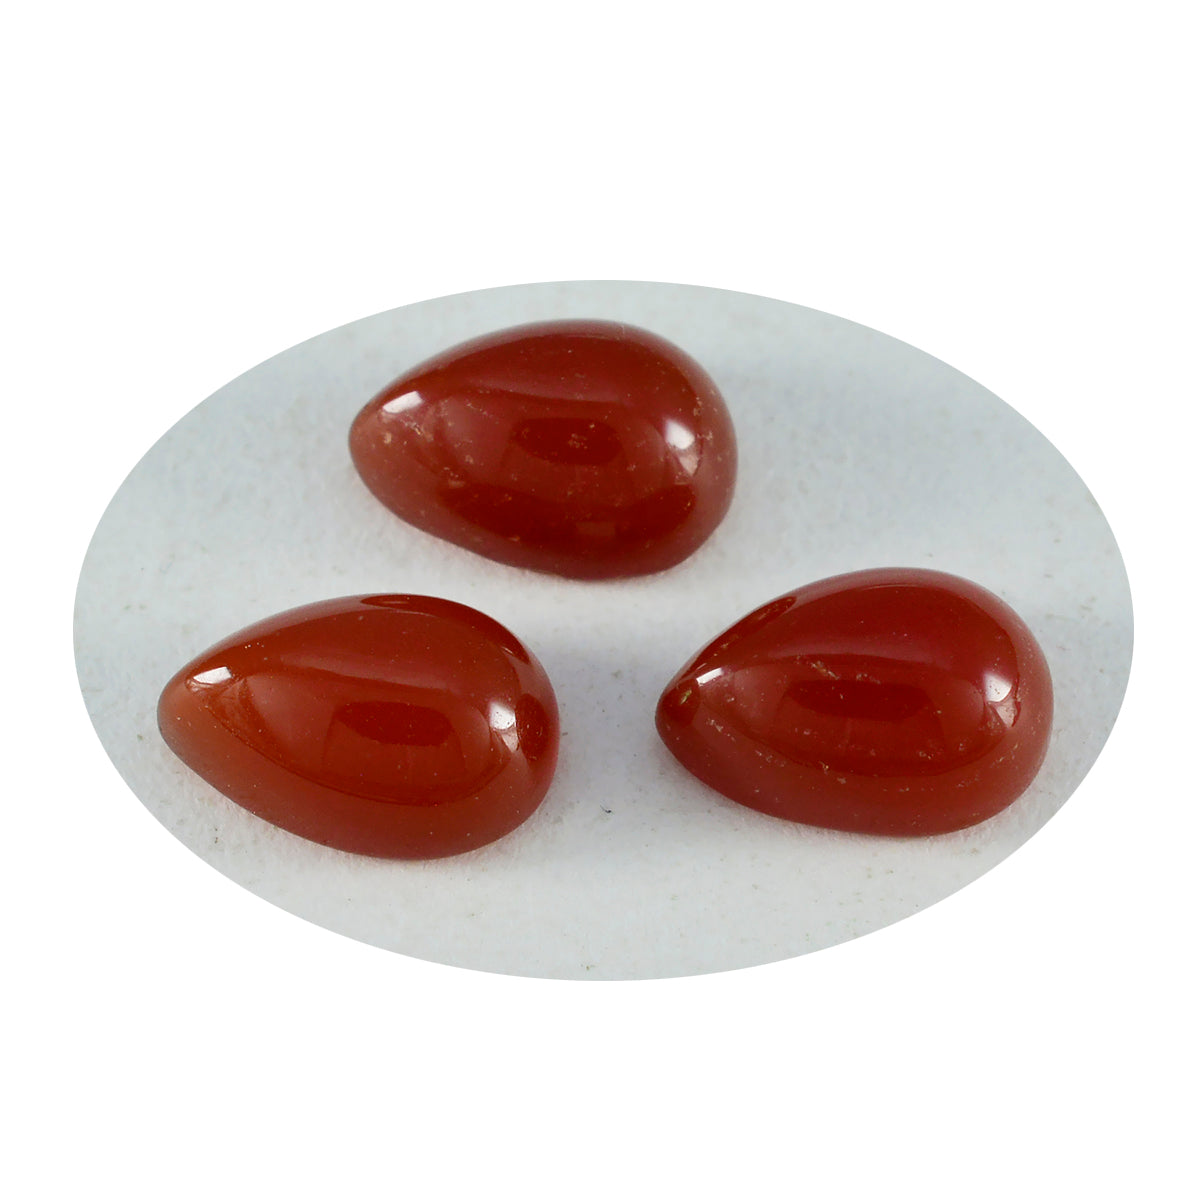 Riyogems 1PC Red Onyx Cabochon 10x14 mm Pear Shape pretty Quality Gemstone